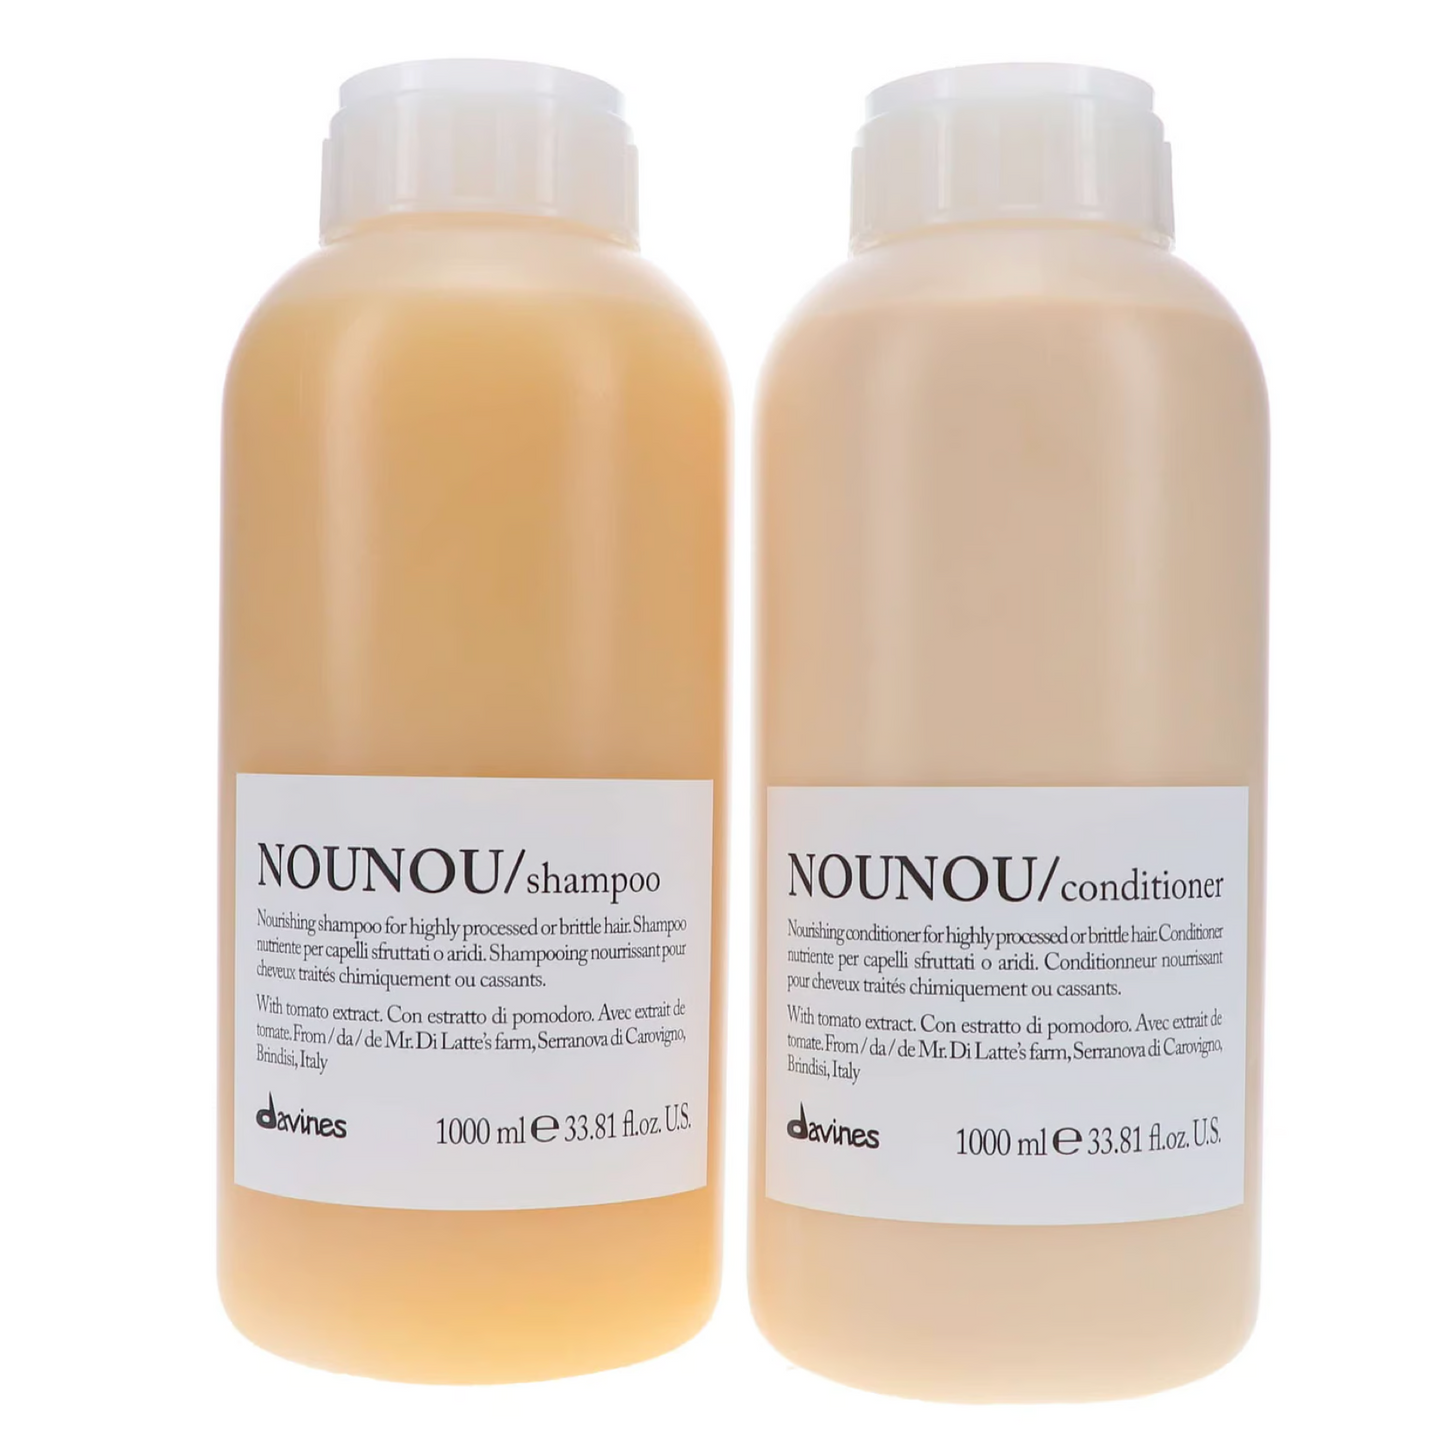 Davines Nounou Shampoo and Conditioner 1000ml